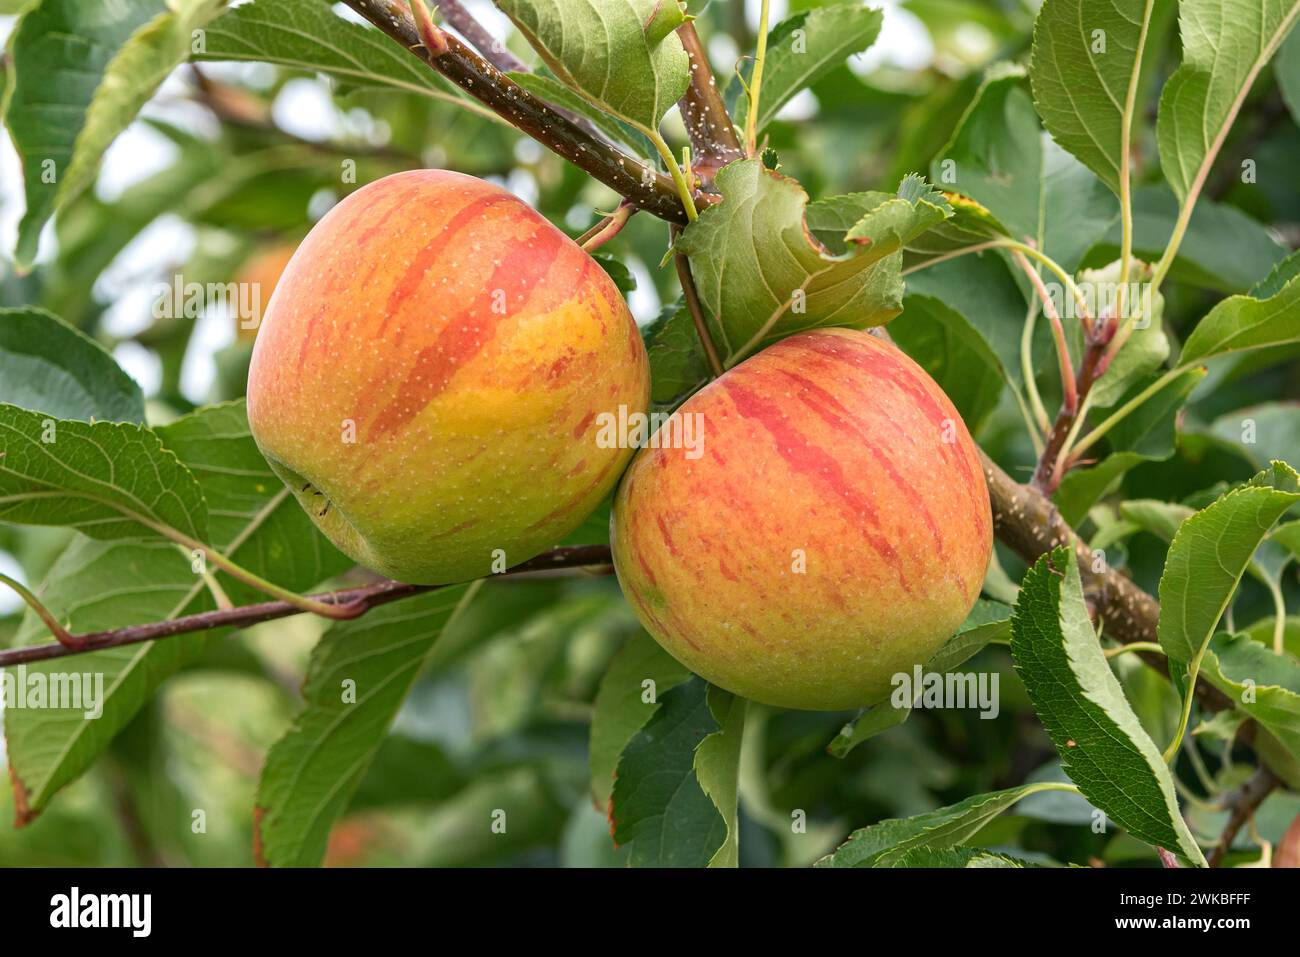 apple (Malus domestica 'Rubinette', Malus domestica Rubinette), cultivar Rubinette Stock Photo